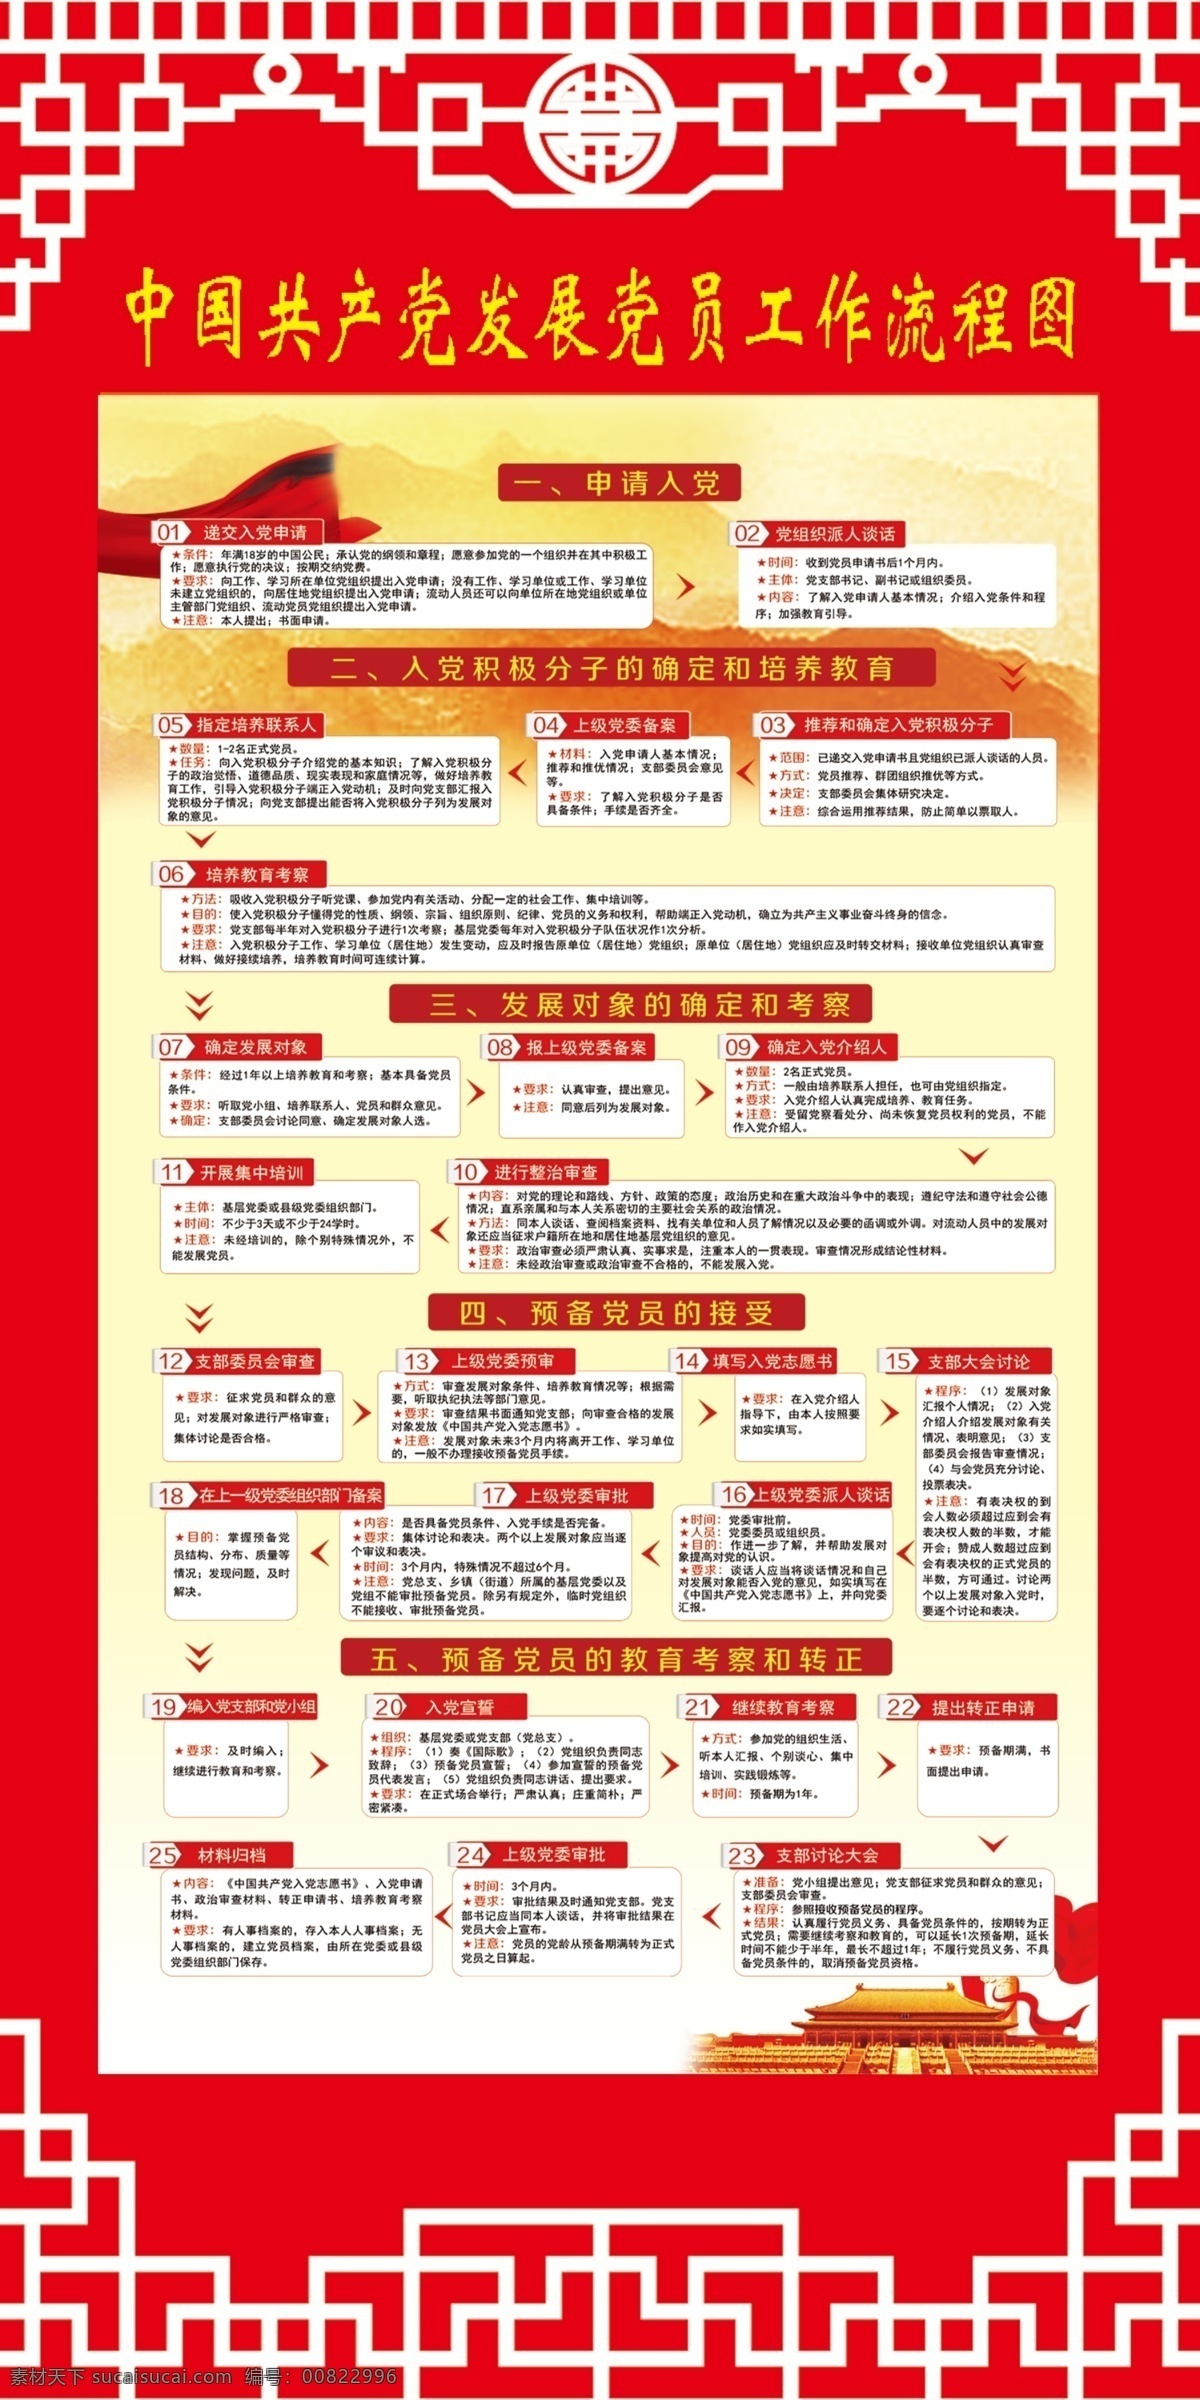 中国共产党 发展党 员工 作 流程图 教 中国 共产党 发展党员 工作流程图 红色 展 展板制度 分层